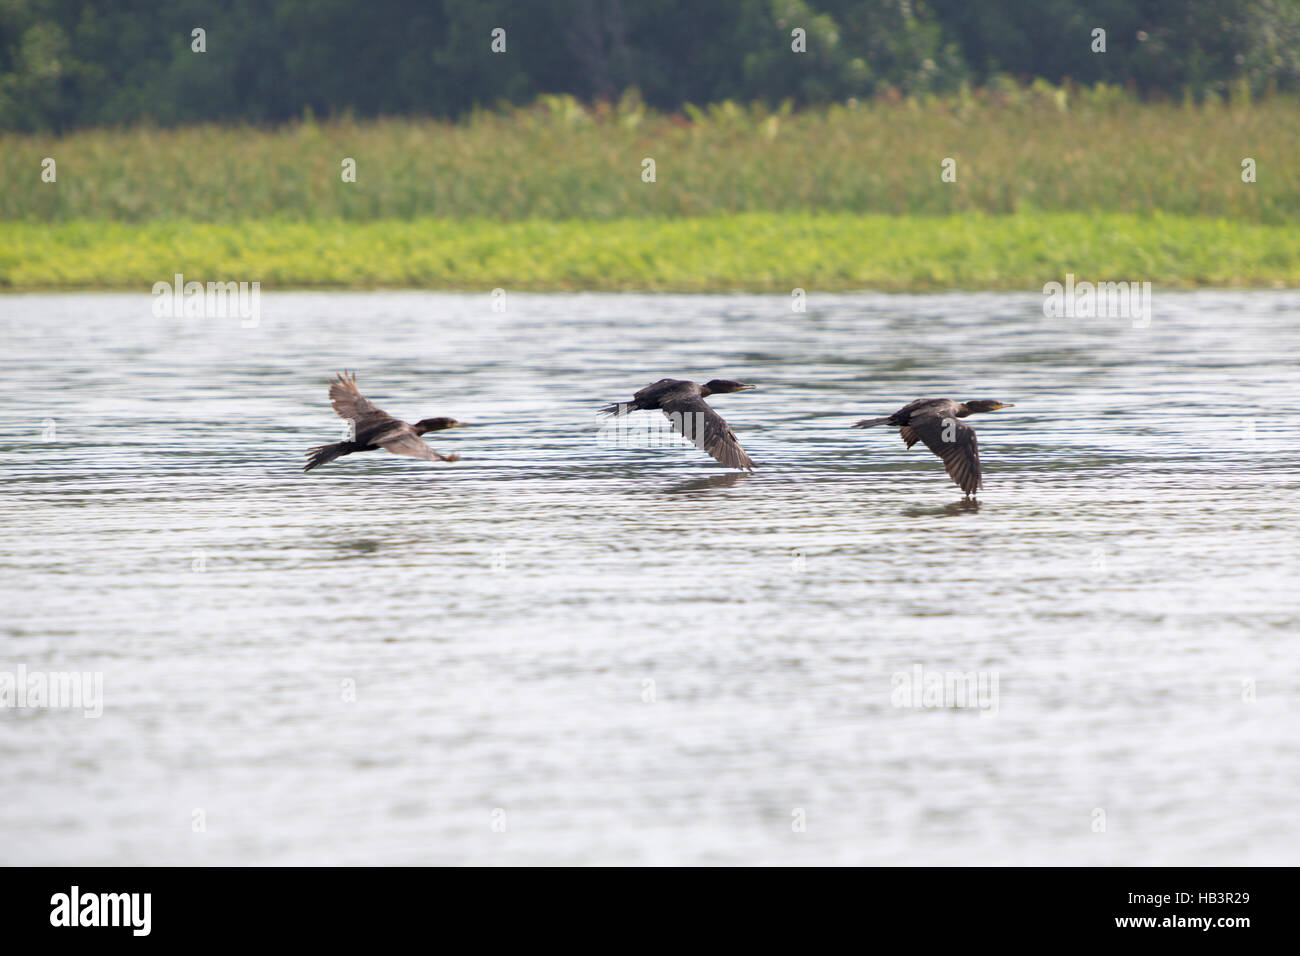 Birds flying in a row at the lake Maracaibo, Venezuela Stock Photo